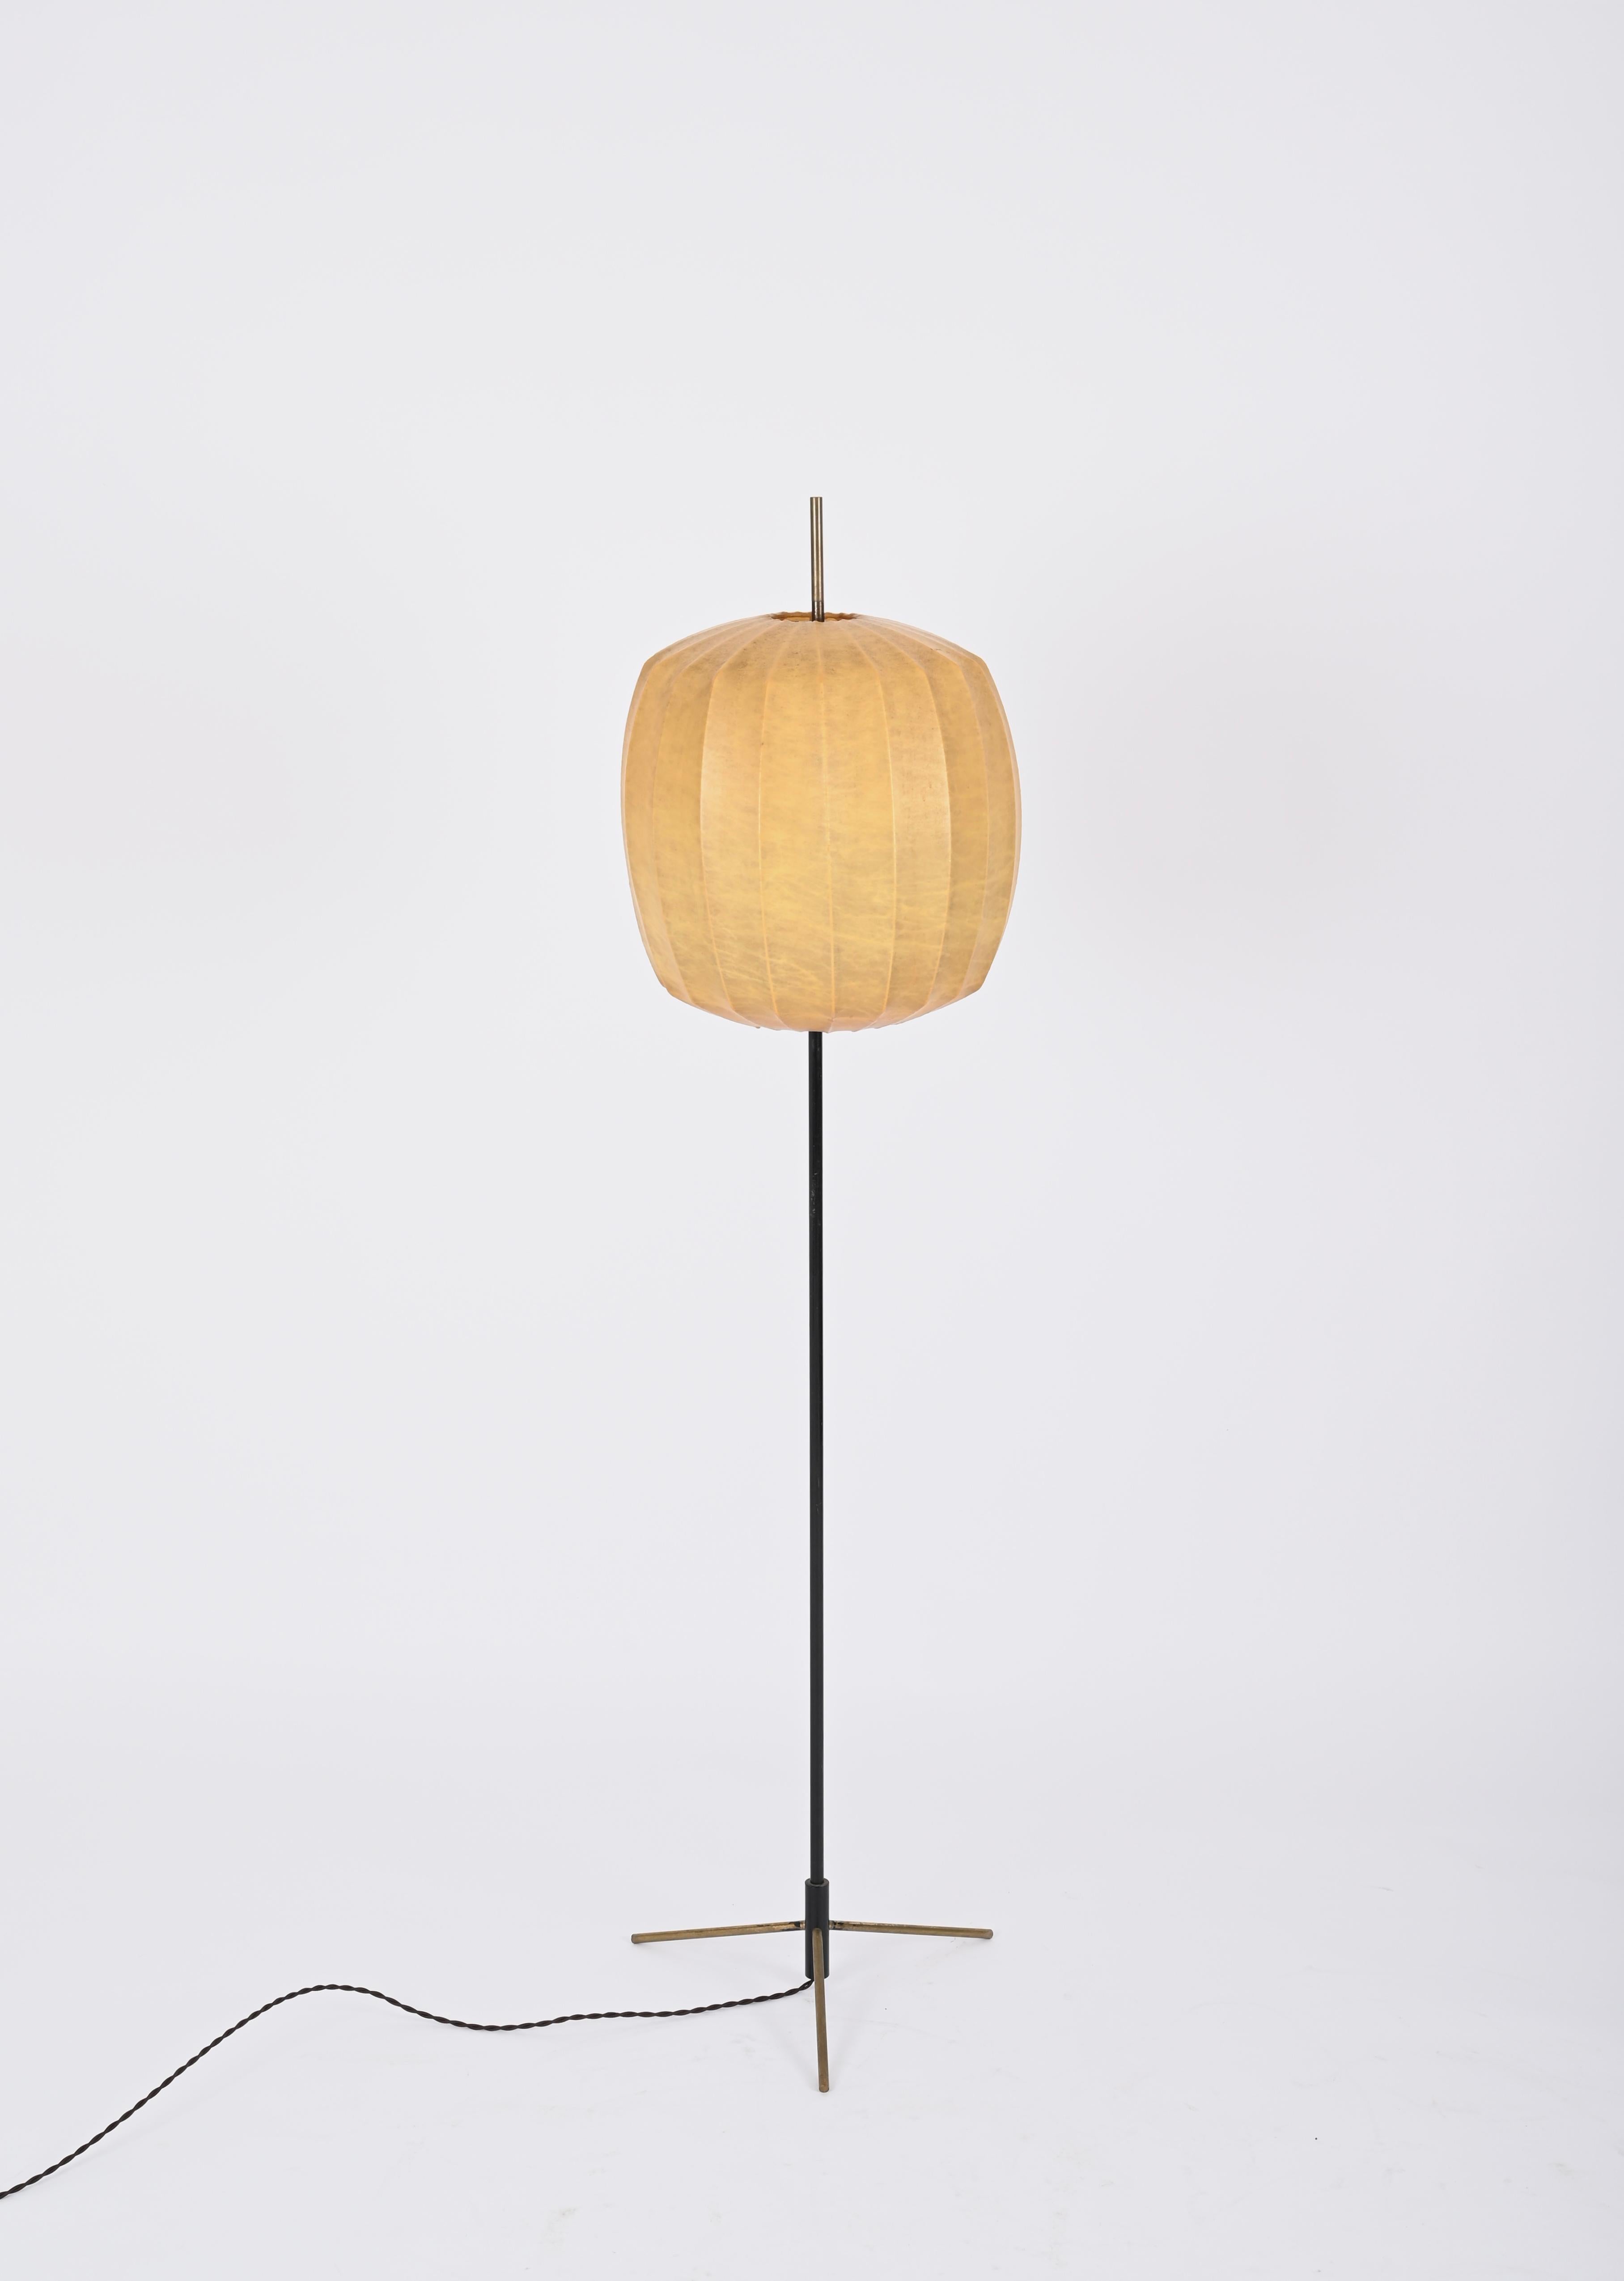 Superbe lampadaire cocon conçu par Achille Castiglioni en Italie dans les années 1960. 

Ce lampadaire cocon à couper le souffle présente une belle structure en métal émaillé noir, avec les trois pieds et la partie supérieure en laiton massif.